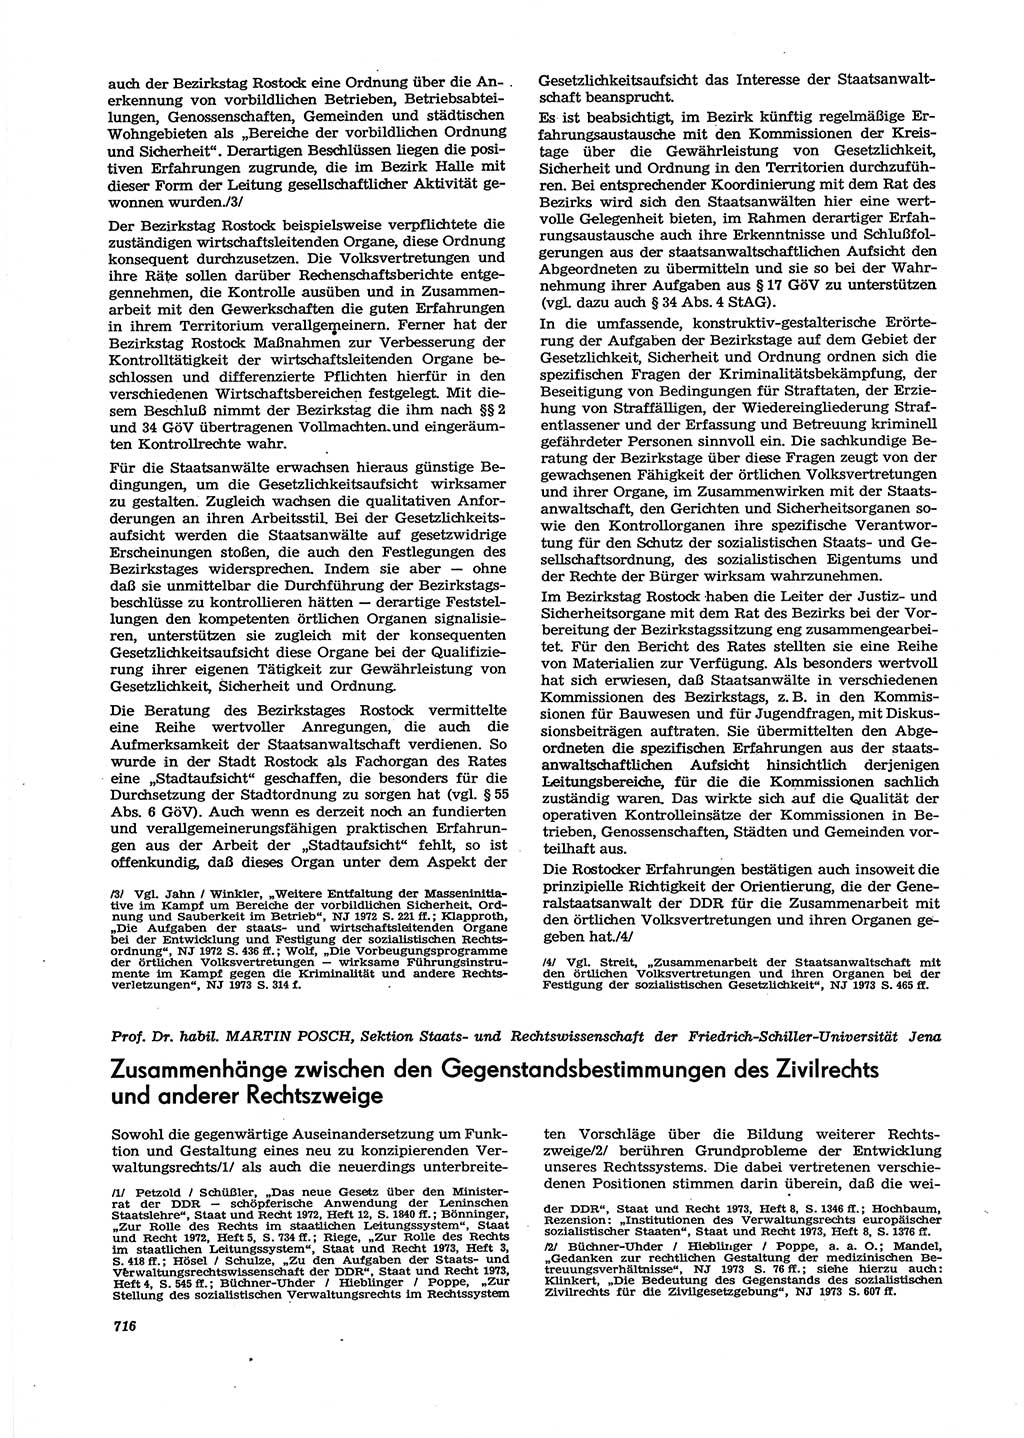 Neue Justiz (NJ), Zeitschrift für Recht und Rechtswissenschaft [Deutsche Demokratische Republik (DDR)], 27. Jahrgang 1973, Seite 716 (NJ DDR 1973, S. 716)